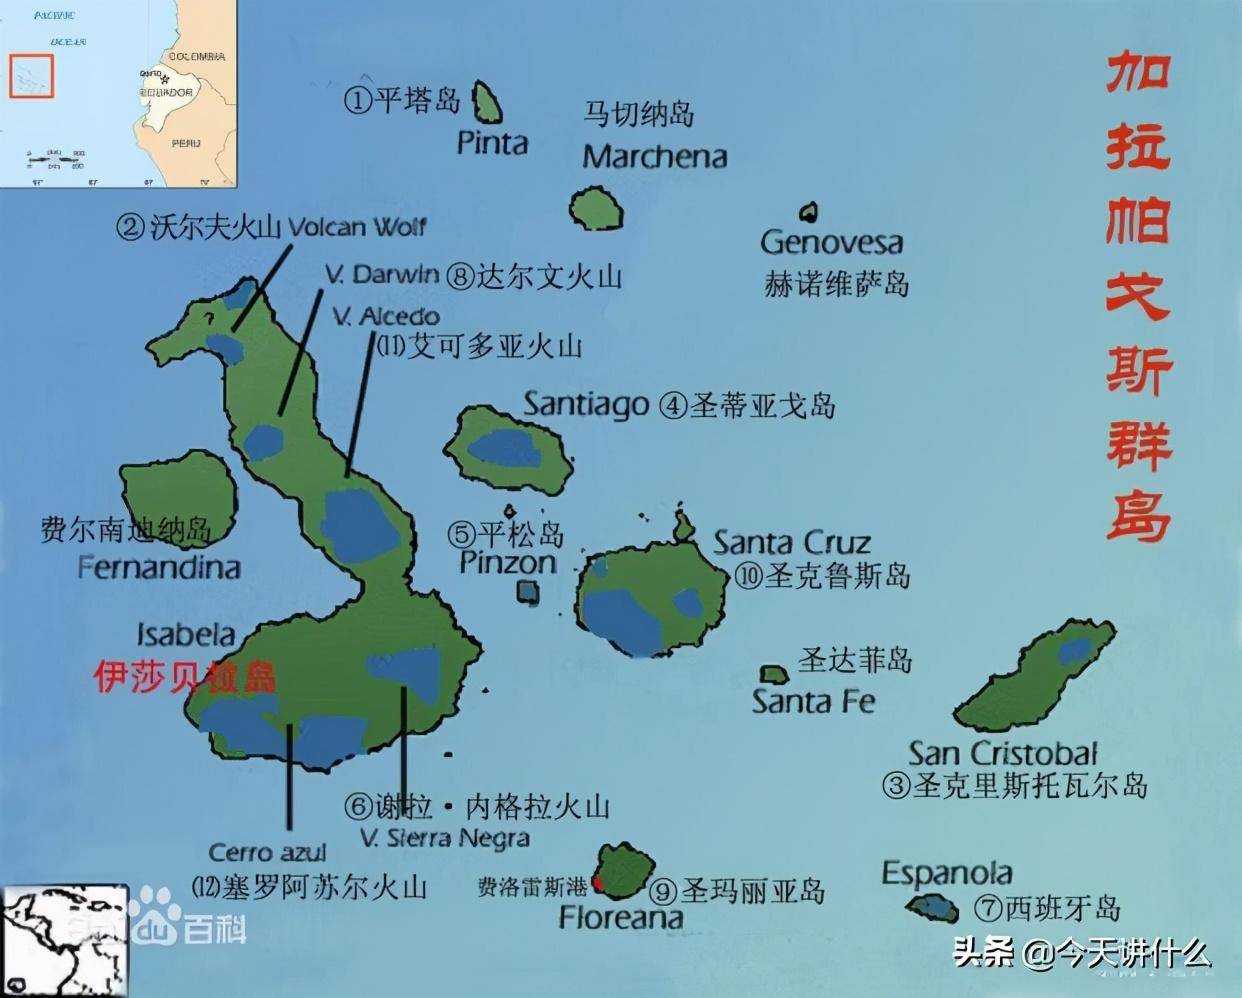 加拉帕戈斯群岛上的独有物种太多了,有加拉帕戈斯海狮,加拉帕戈斯军舰